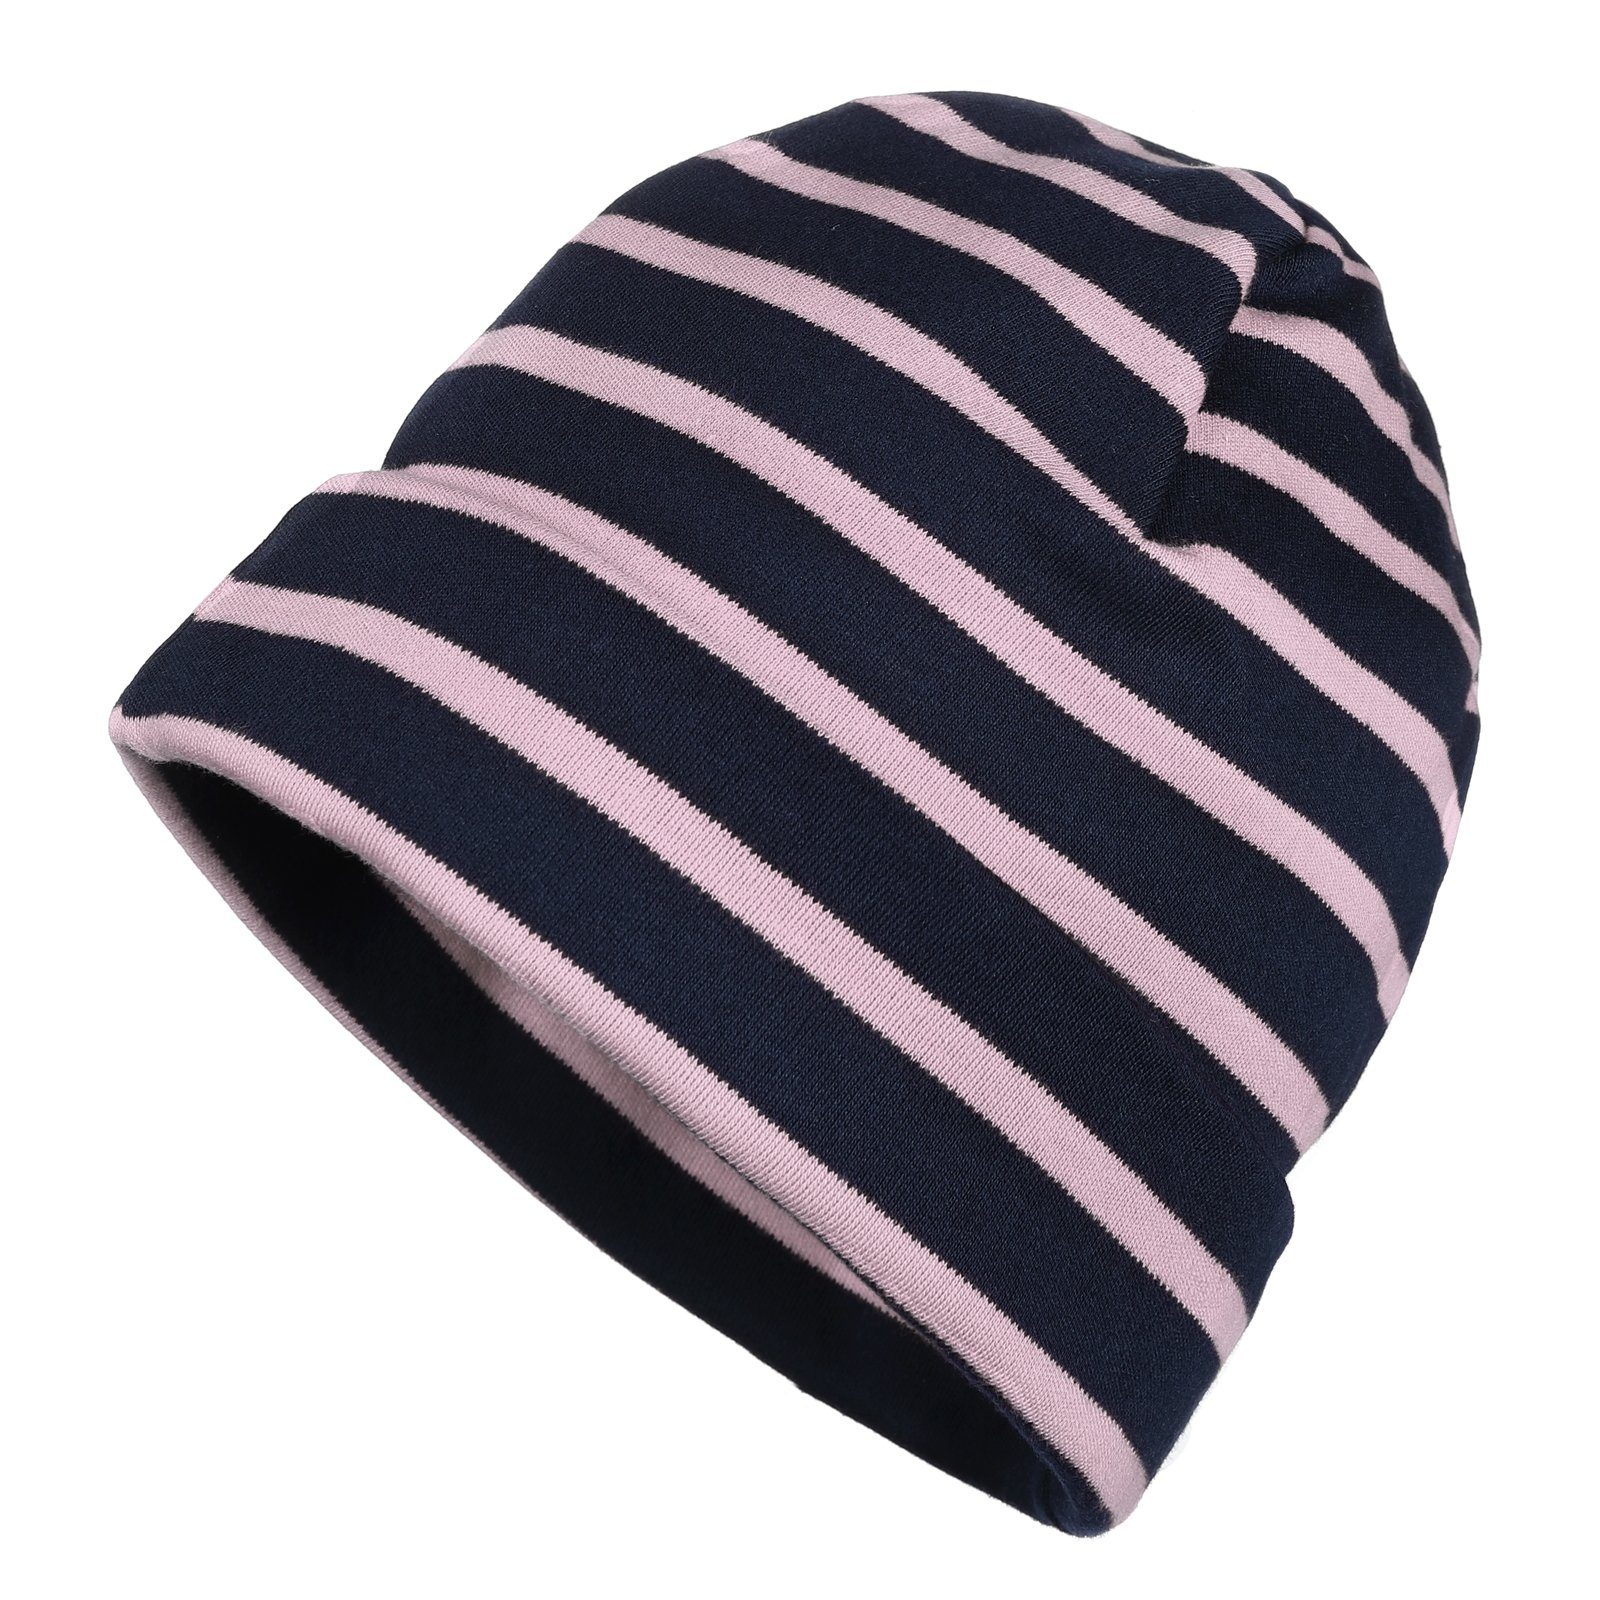 modAS Strickmütze Unisex Mütze Streifen für Kinder & Erwachsene - Ringelmütze Baumwolle (43) blau / rosa